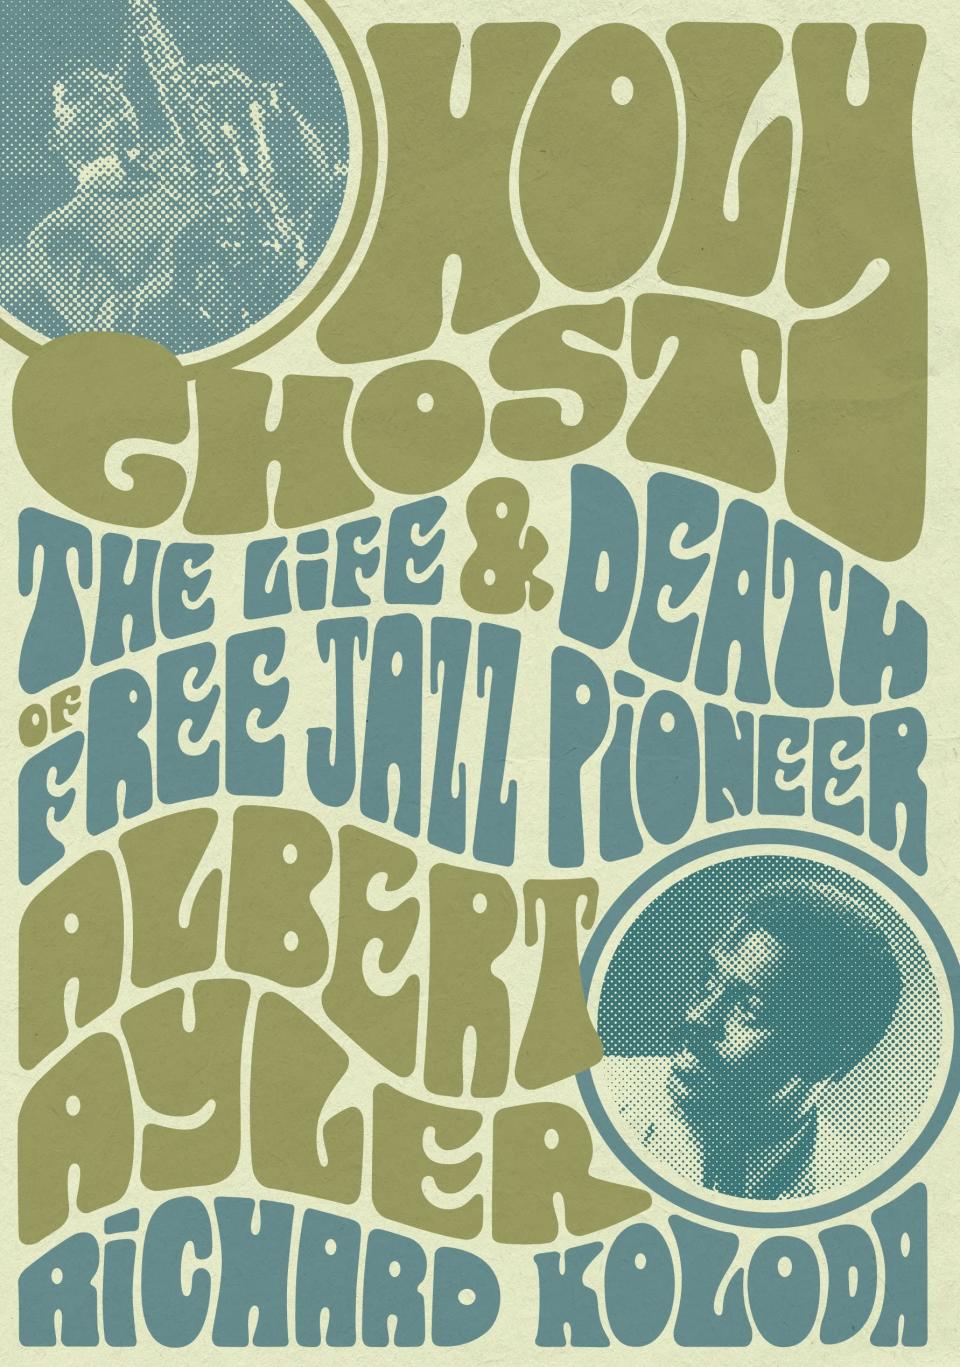 Holy Ghost The Life & Death of Free Jazz Pioneer Albert Ryler